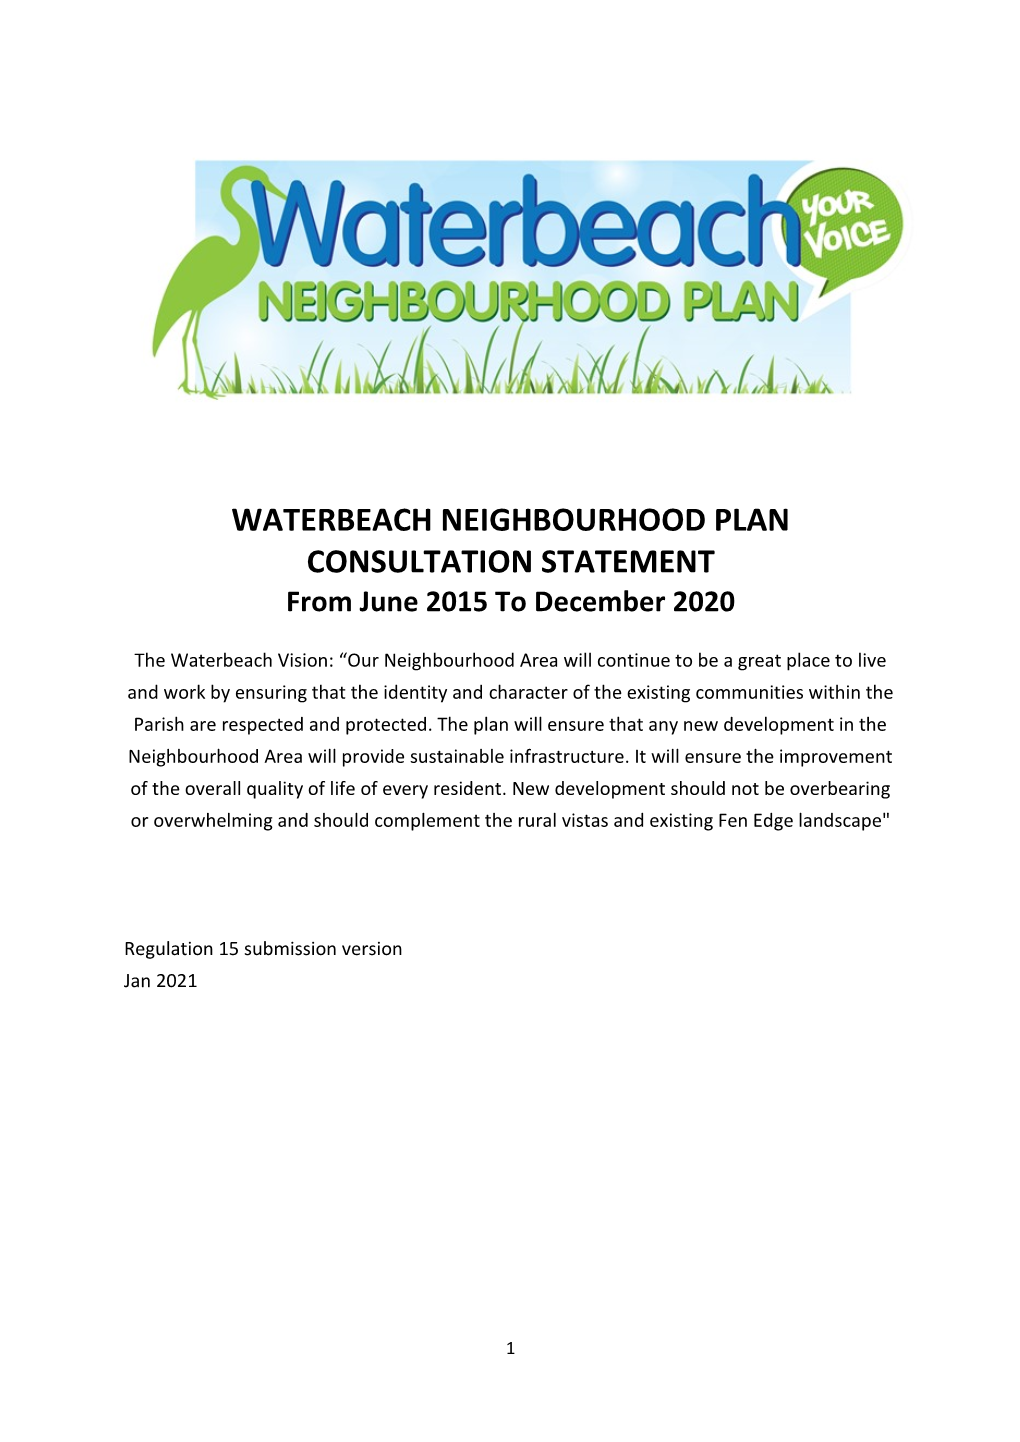 WATERBEACH NEIGHBOURHOOD PLAN CONSULTATION STATEMENT from June 2015 to December 2020